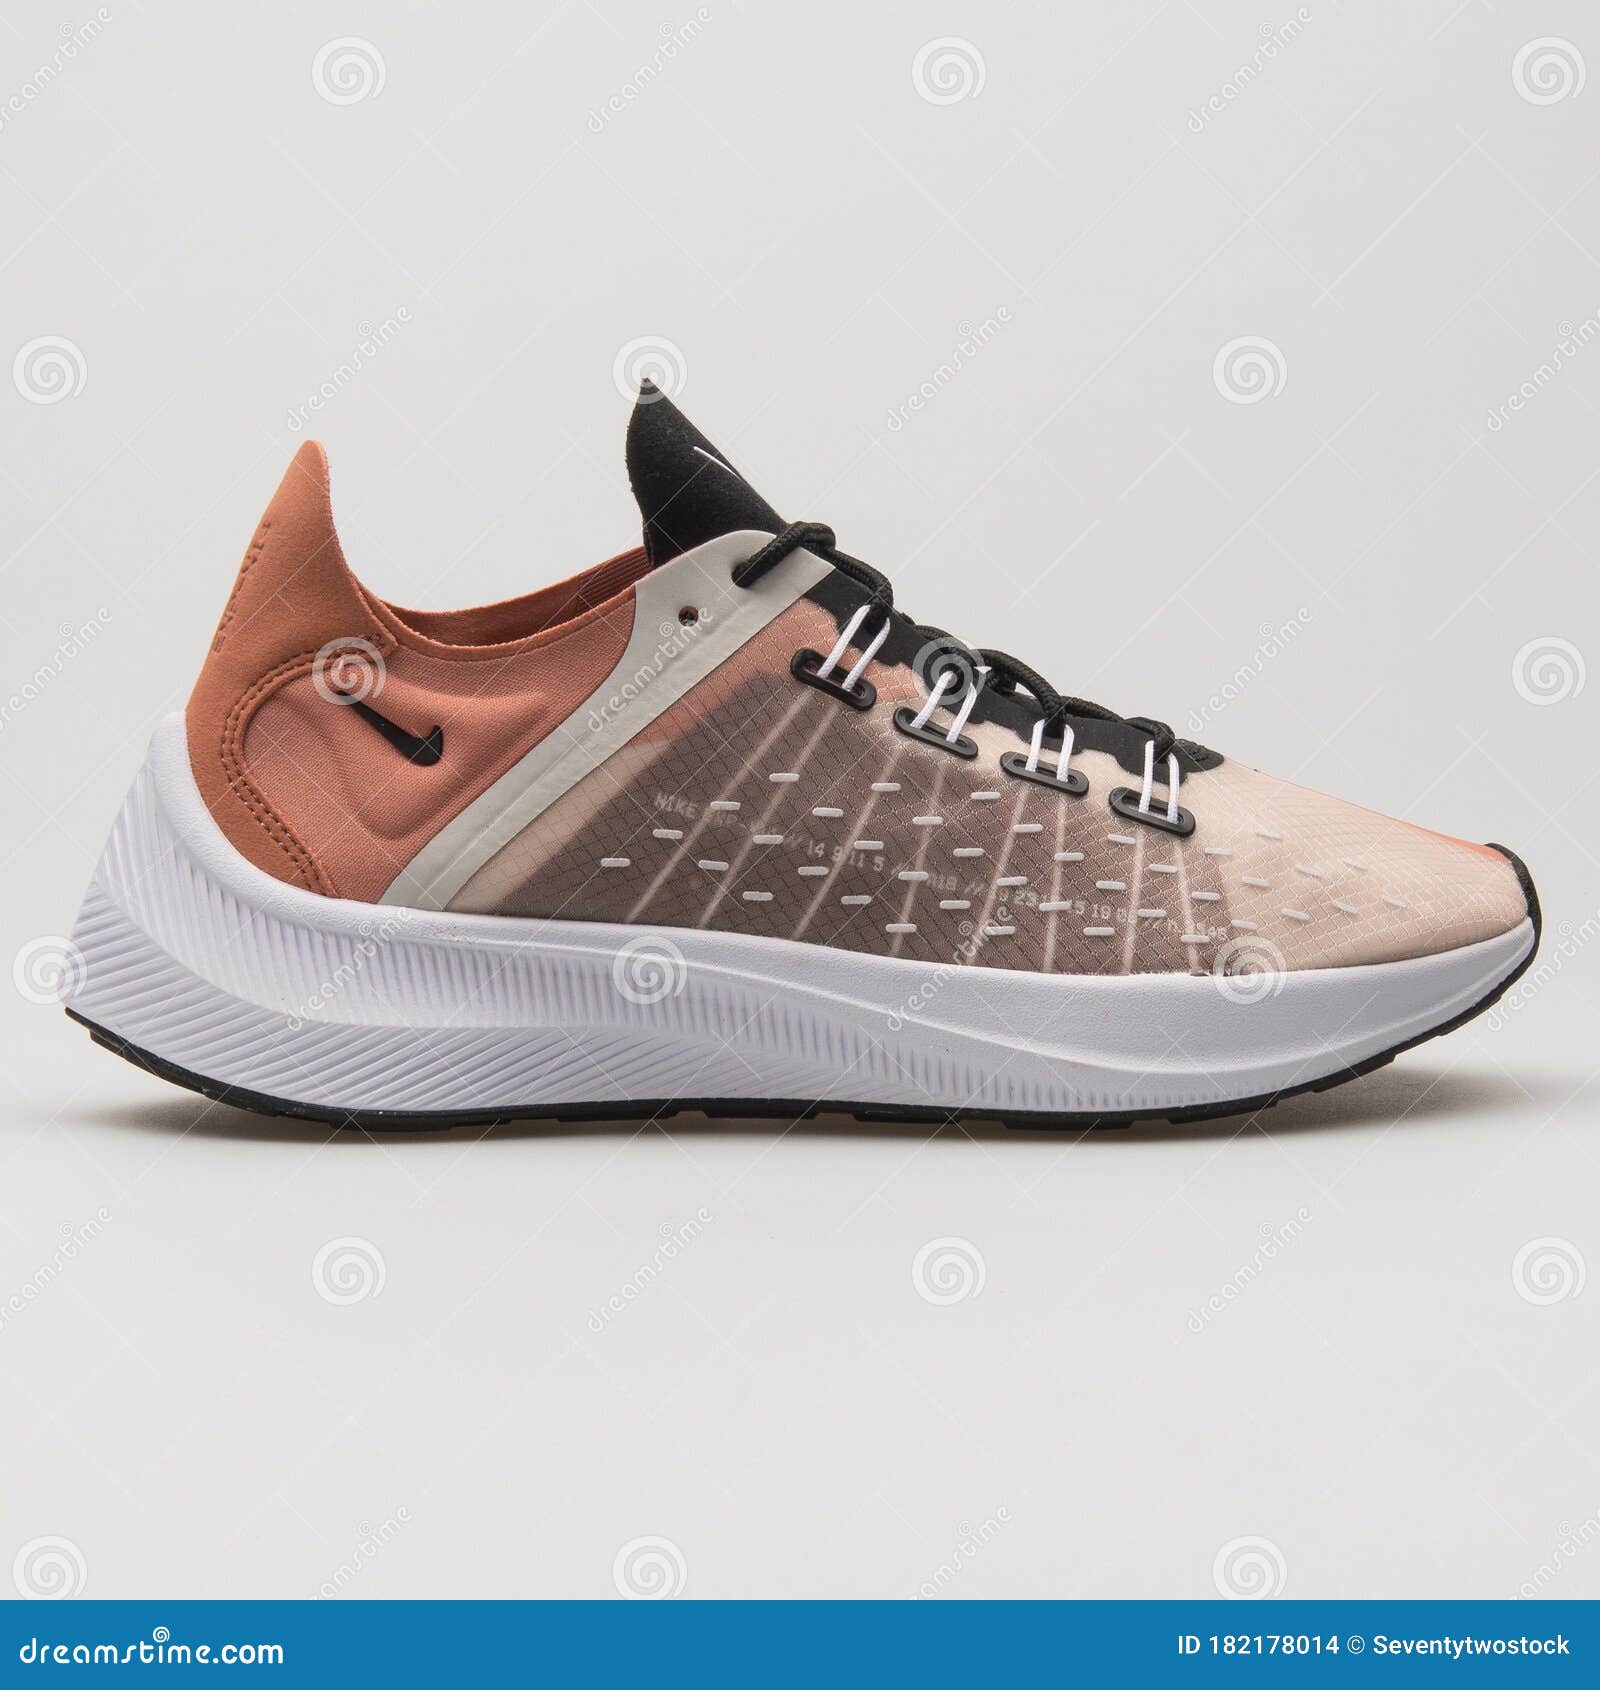 Nike EXP-X14 Women's Running Shoes, AO3170 101 Size 6 | eBay